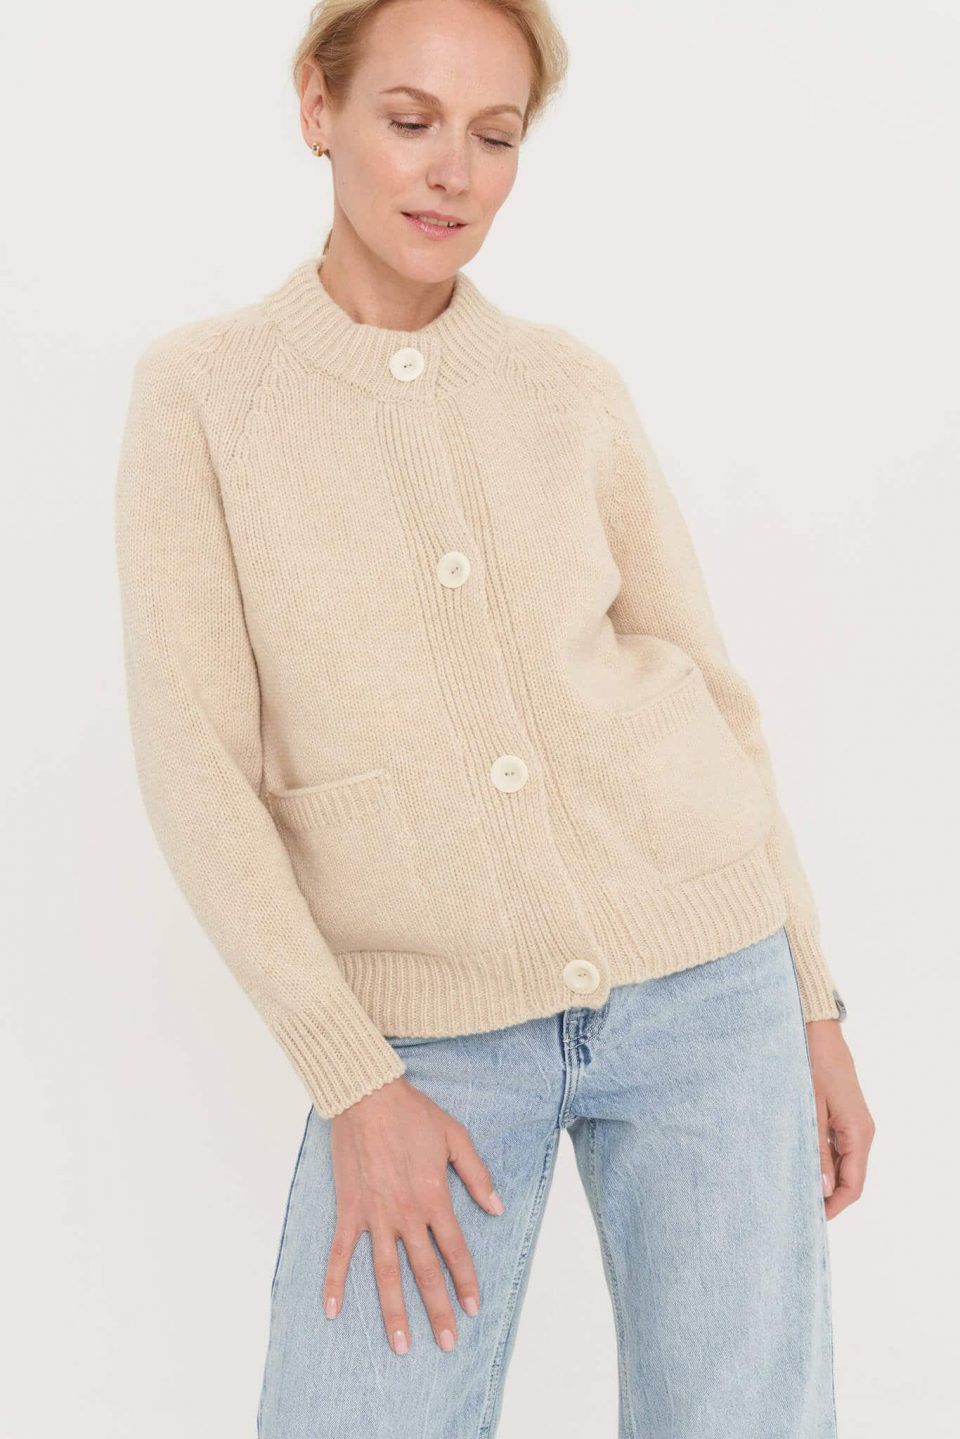 merino wool hand knitted sweater